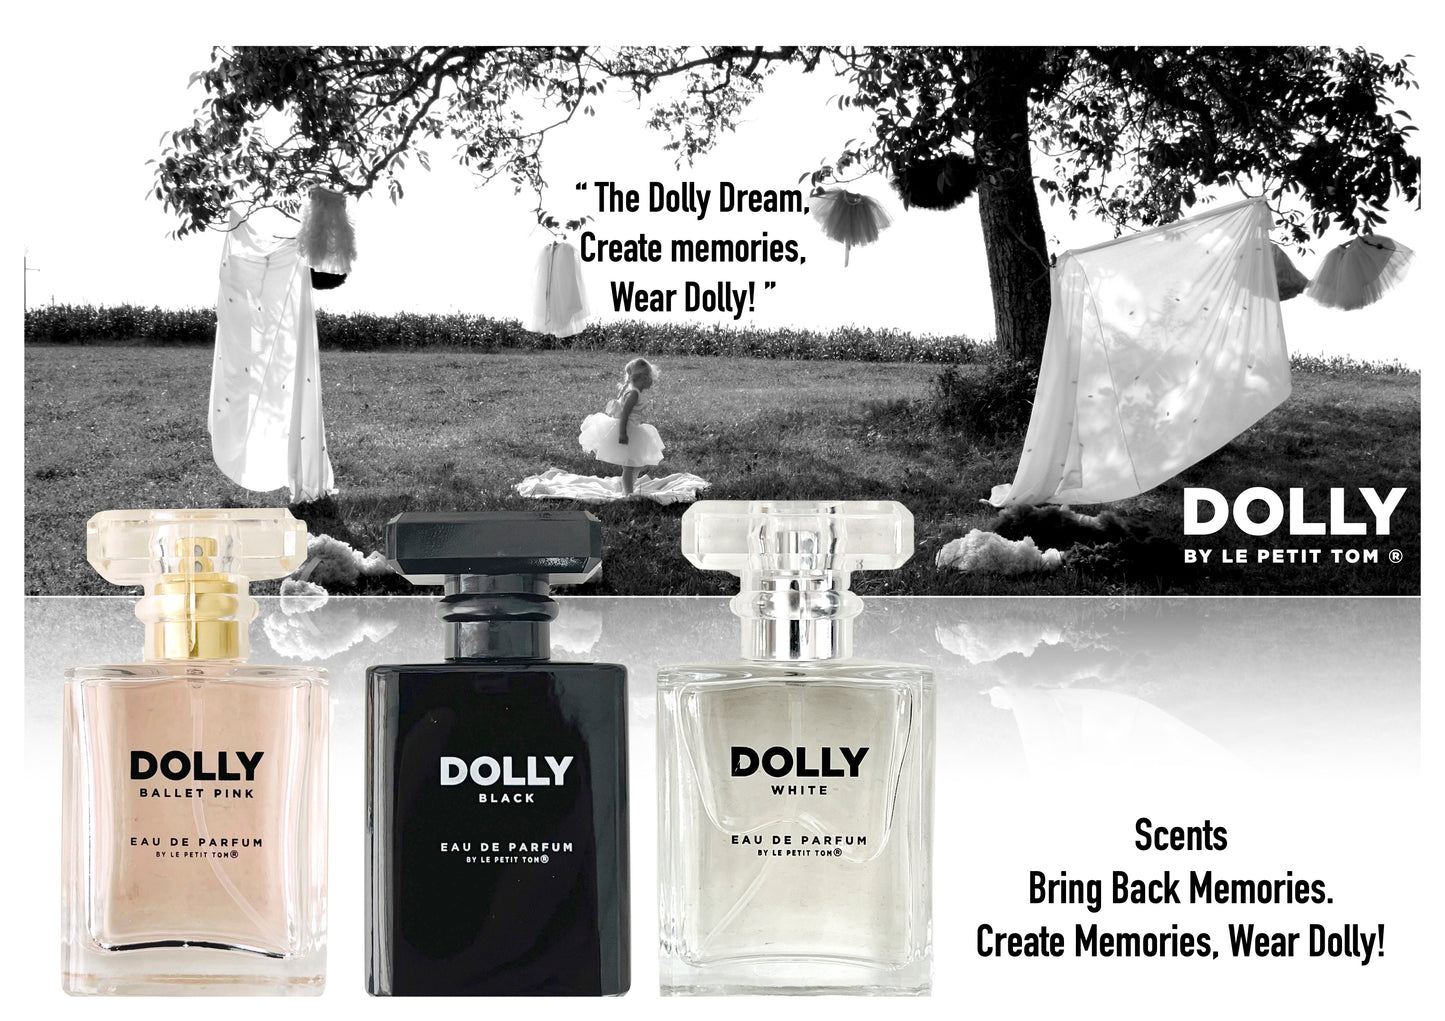 DOLLY WHITE Eau de Parfum 50ml